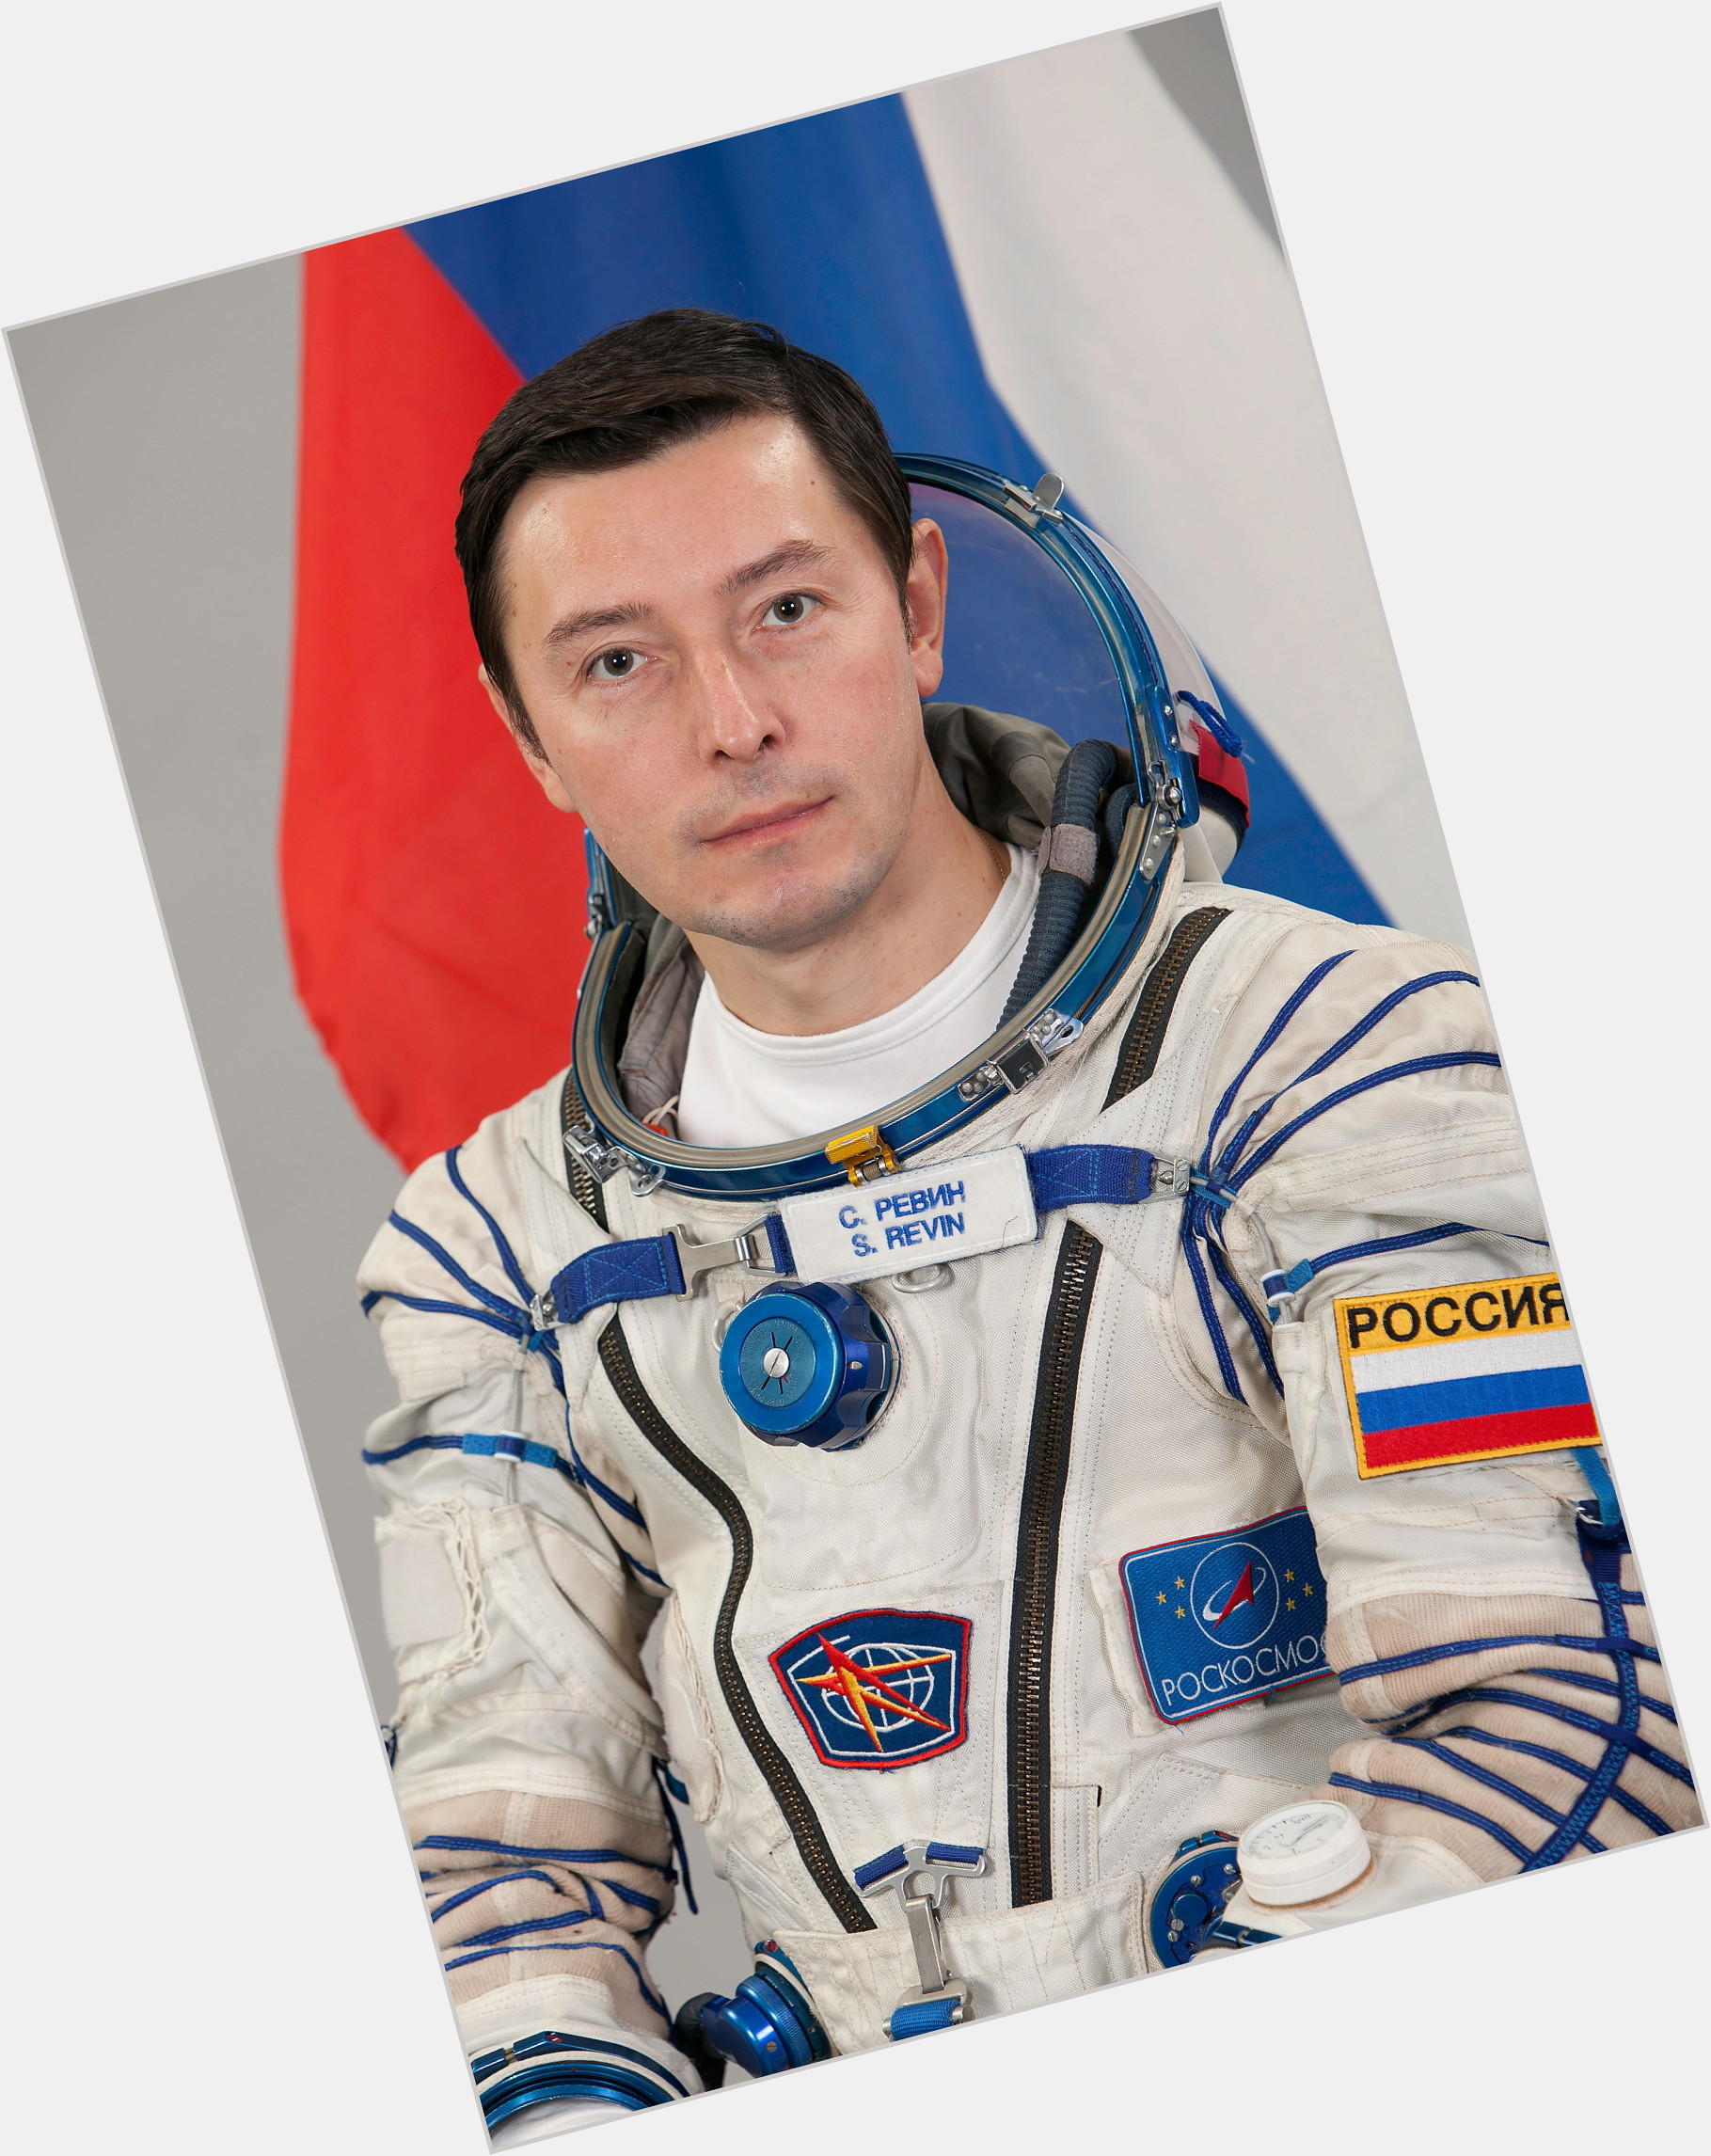 Sergei Revin birthday 2015